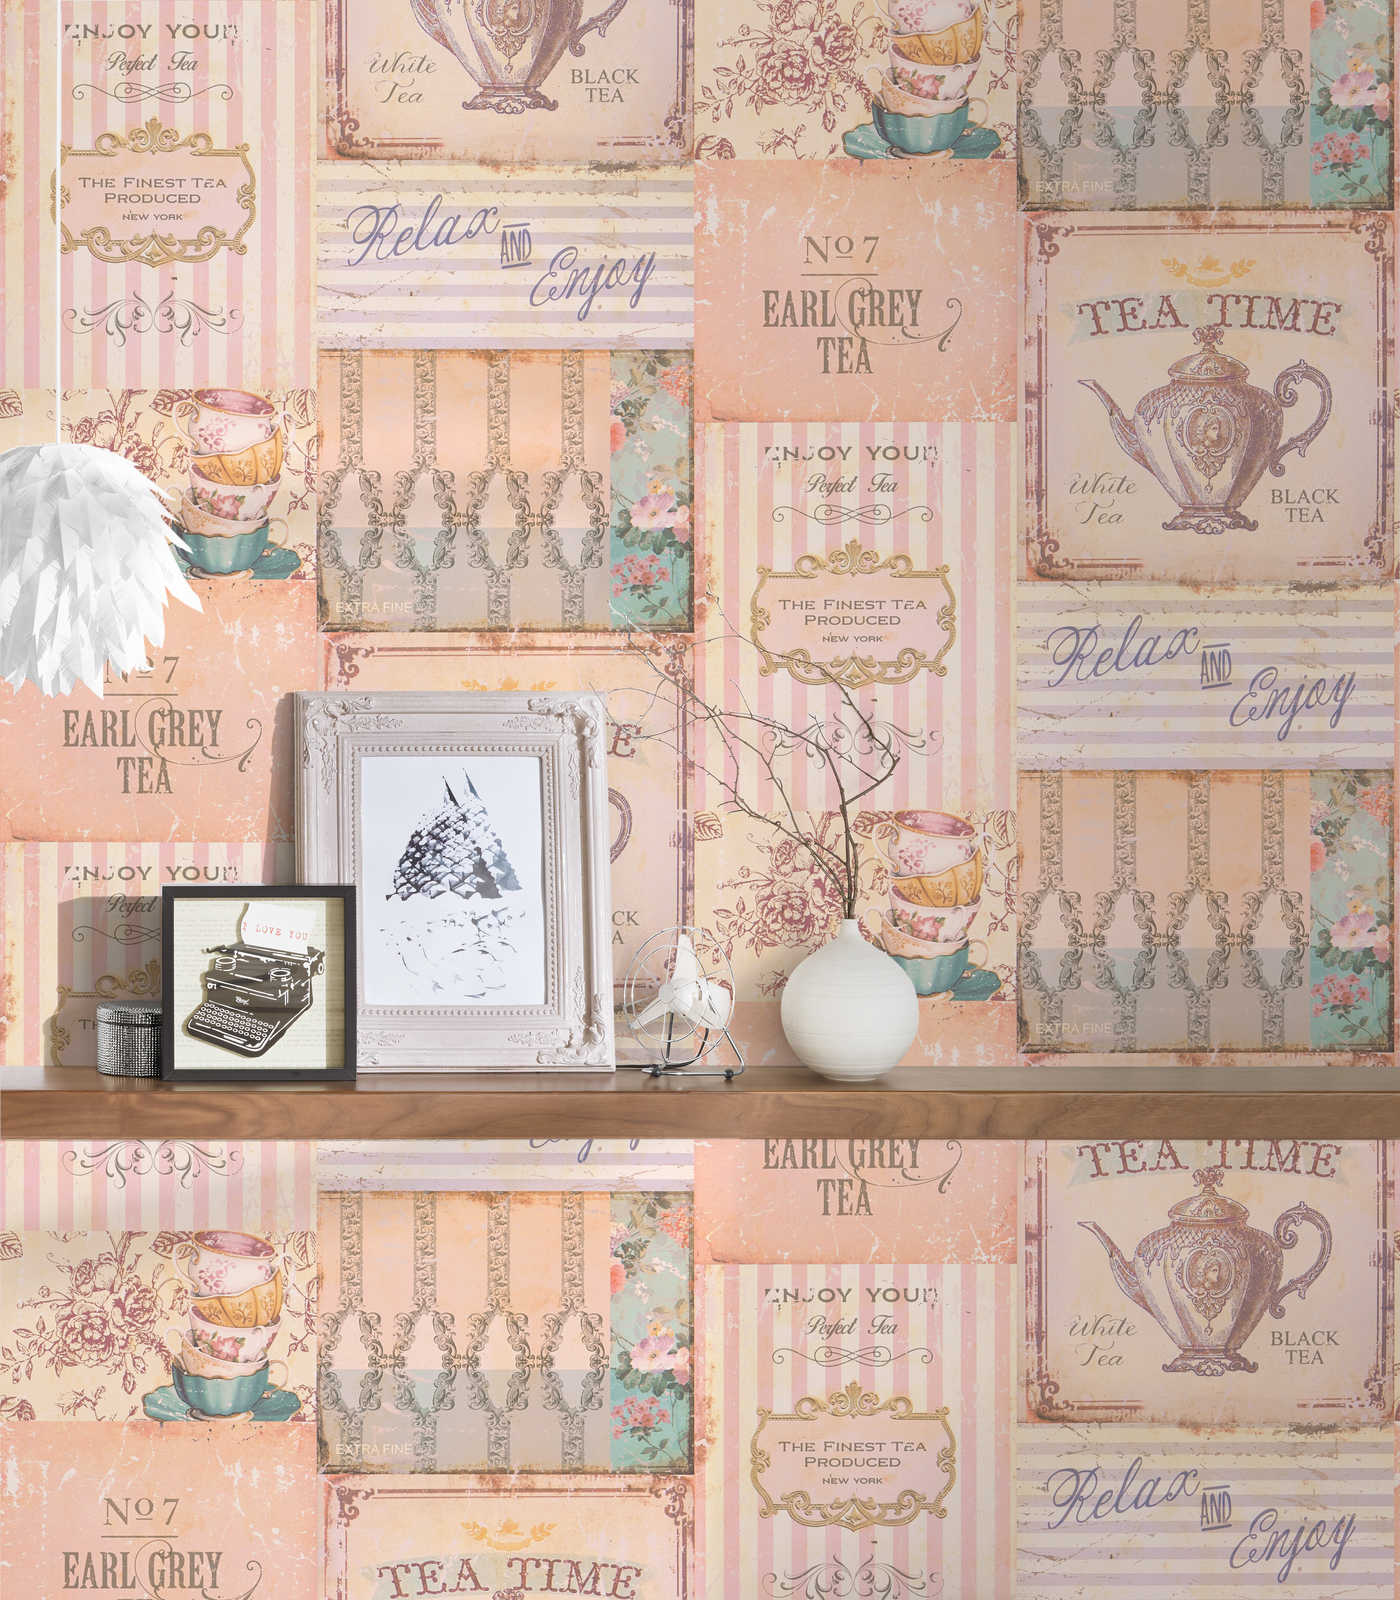             Keuken behang Tea Time collage in landelijke stijl - roze, grijs, blauw
        